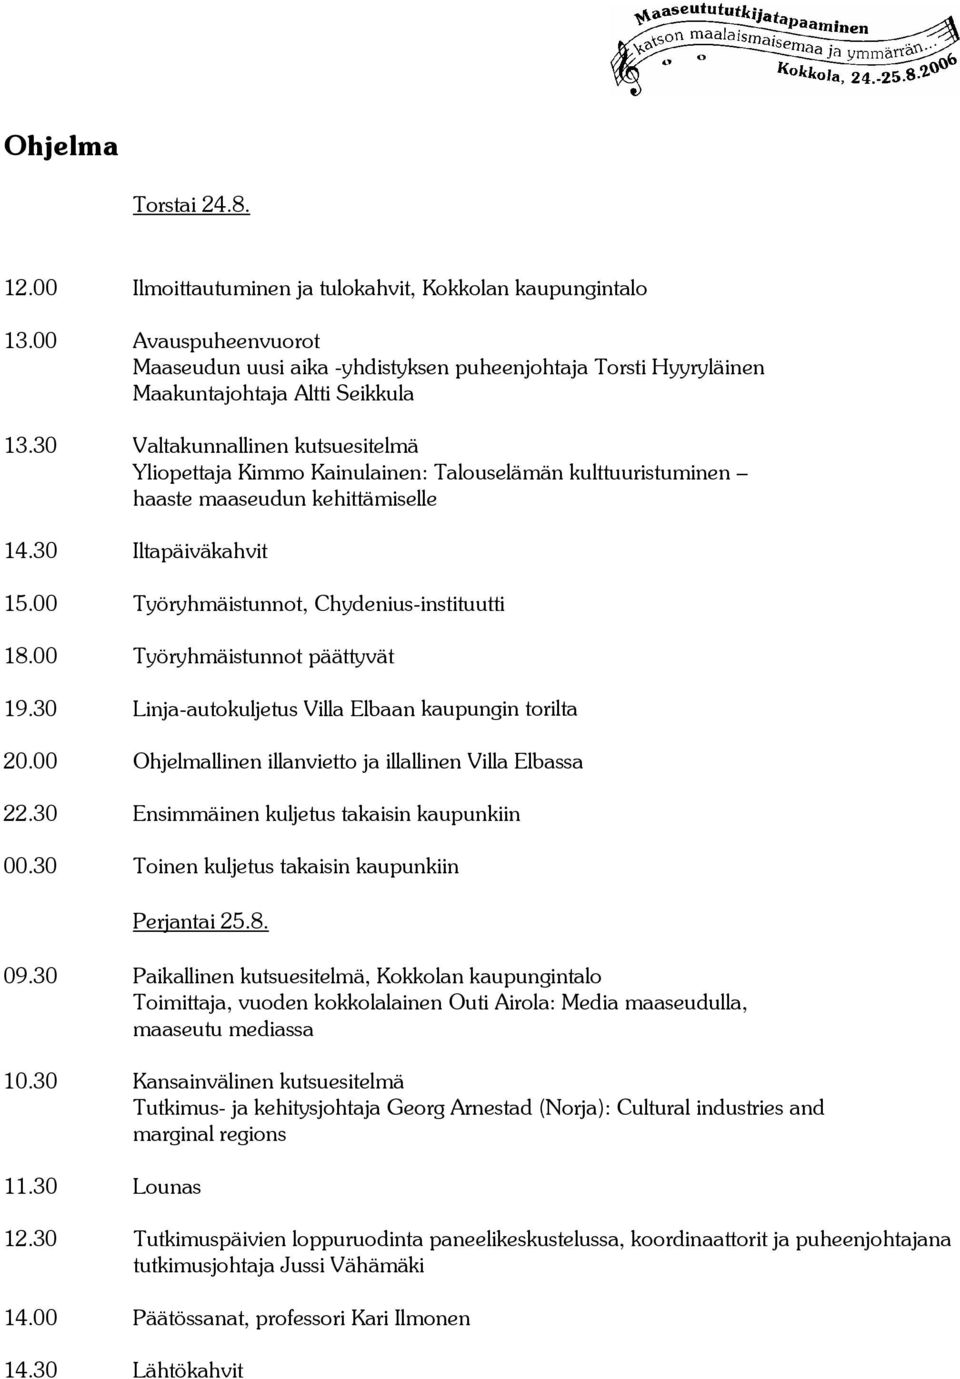 30 Valtakunnallinen kutsuesitelmä Yliopettaja Kimmo Kainulainen: Talouselämän kulttuuristuminen haaste maaseudun kehittämiselle 14.30 Iltapäiväkahvit 15.00 Työryhmäistunnot, Chydenius-instituutti 18.